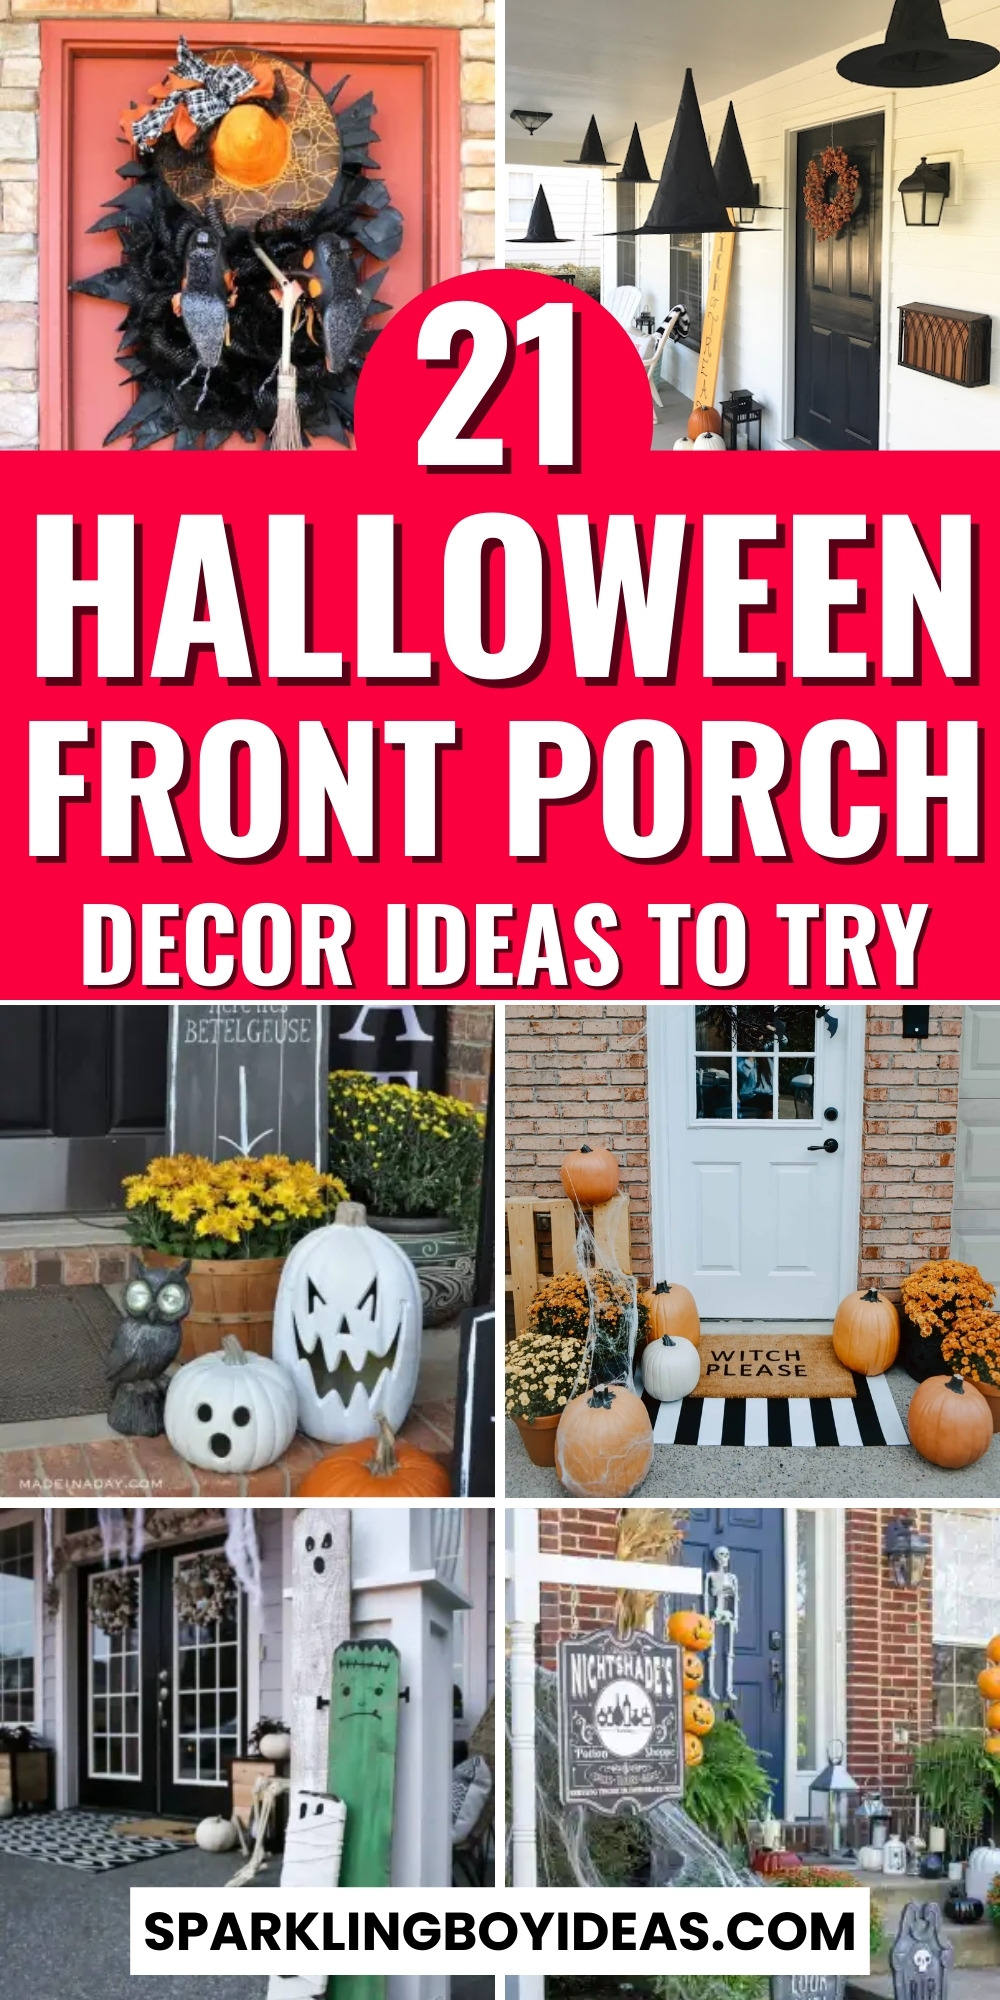 21 Cute Halloween Front Porch Decor - Sparkling Boy Ideas